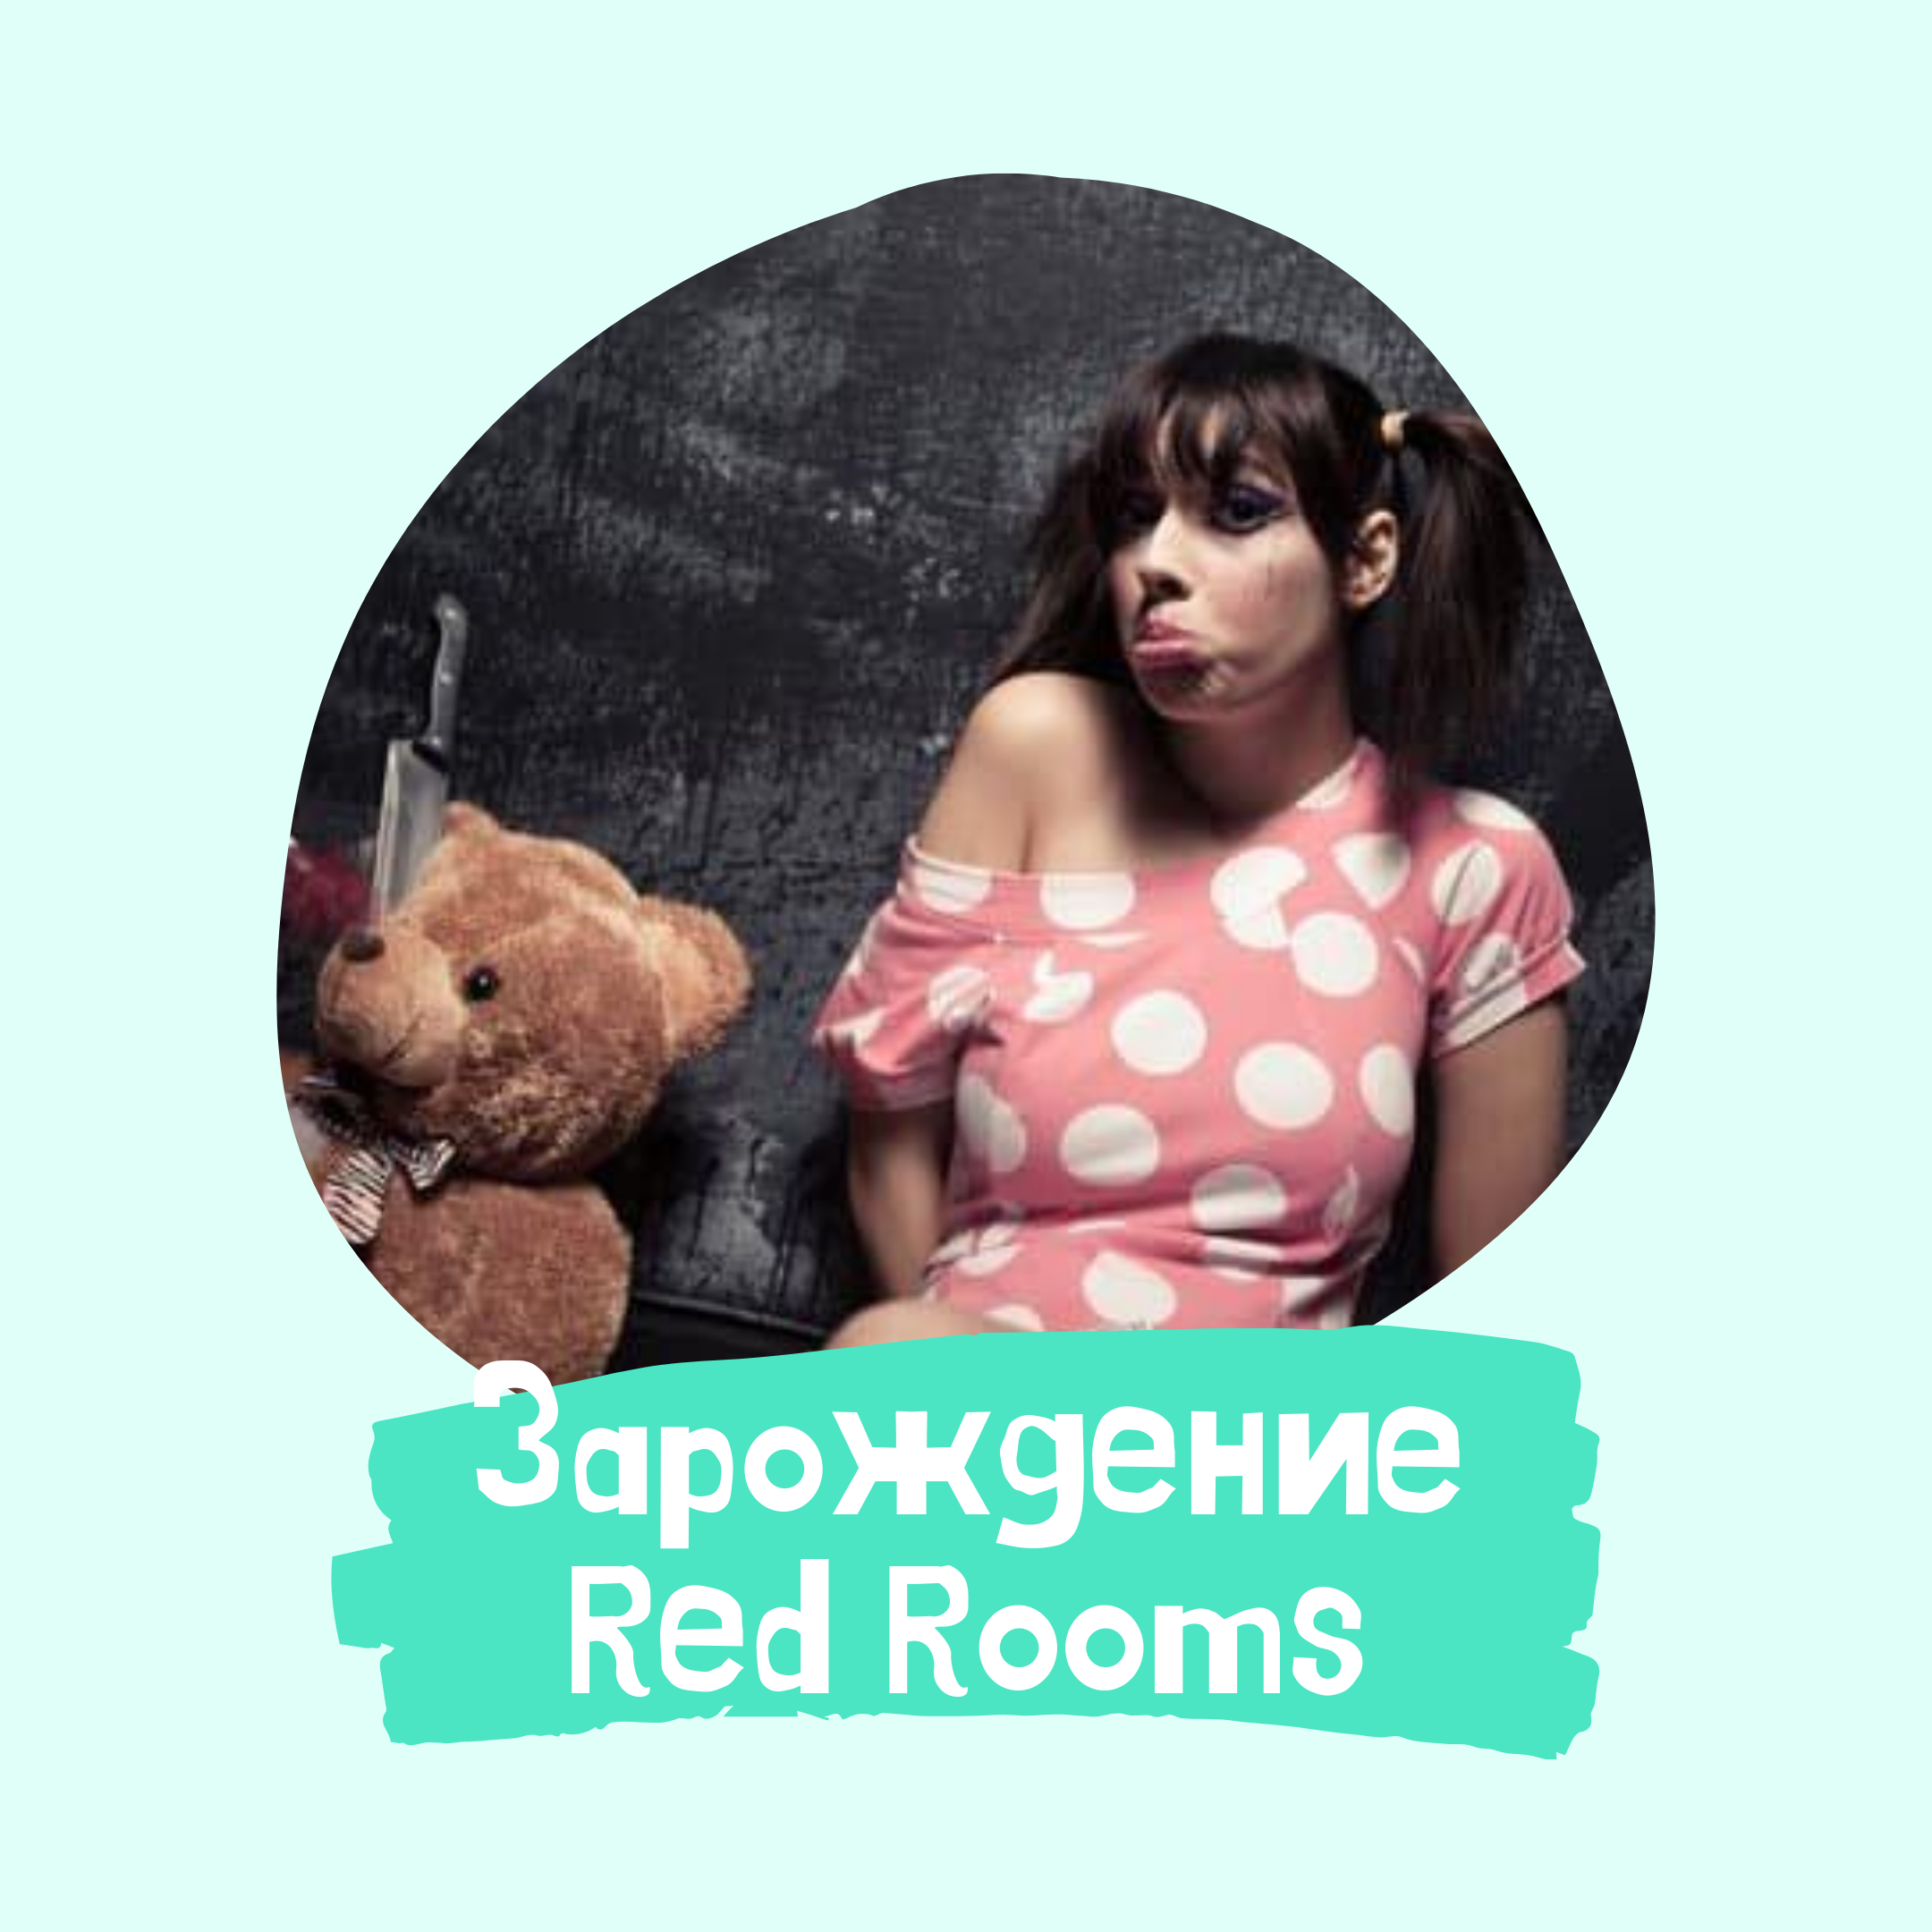 Красная комната даркнет mega2web скачать с офф сайта браузер тор megaruzxpnew4af